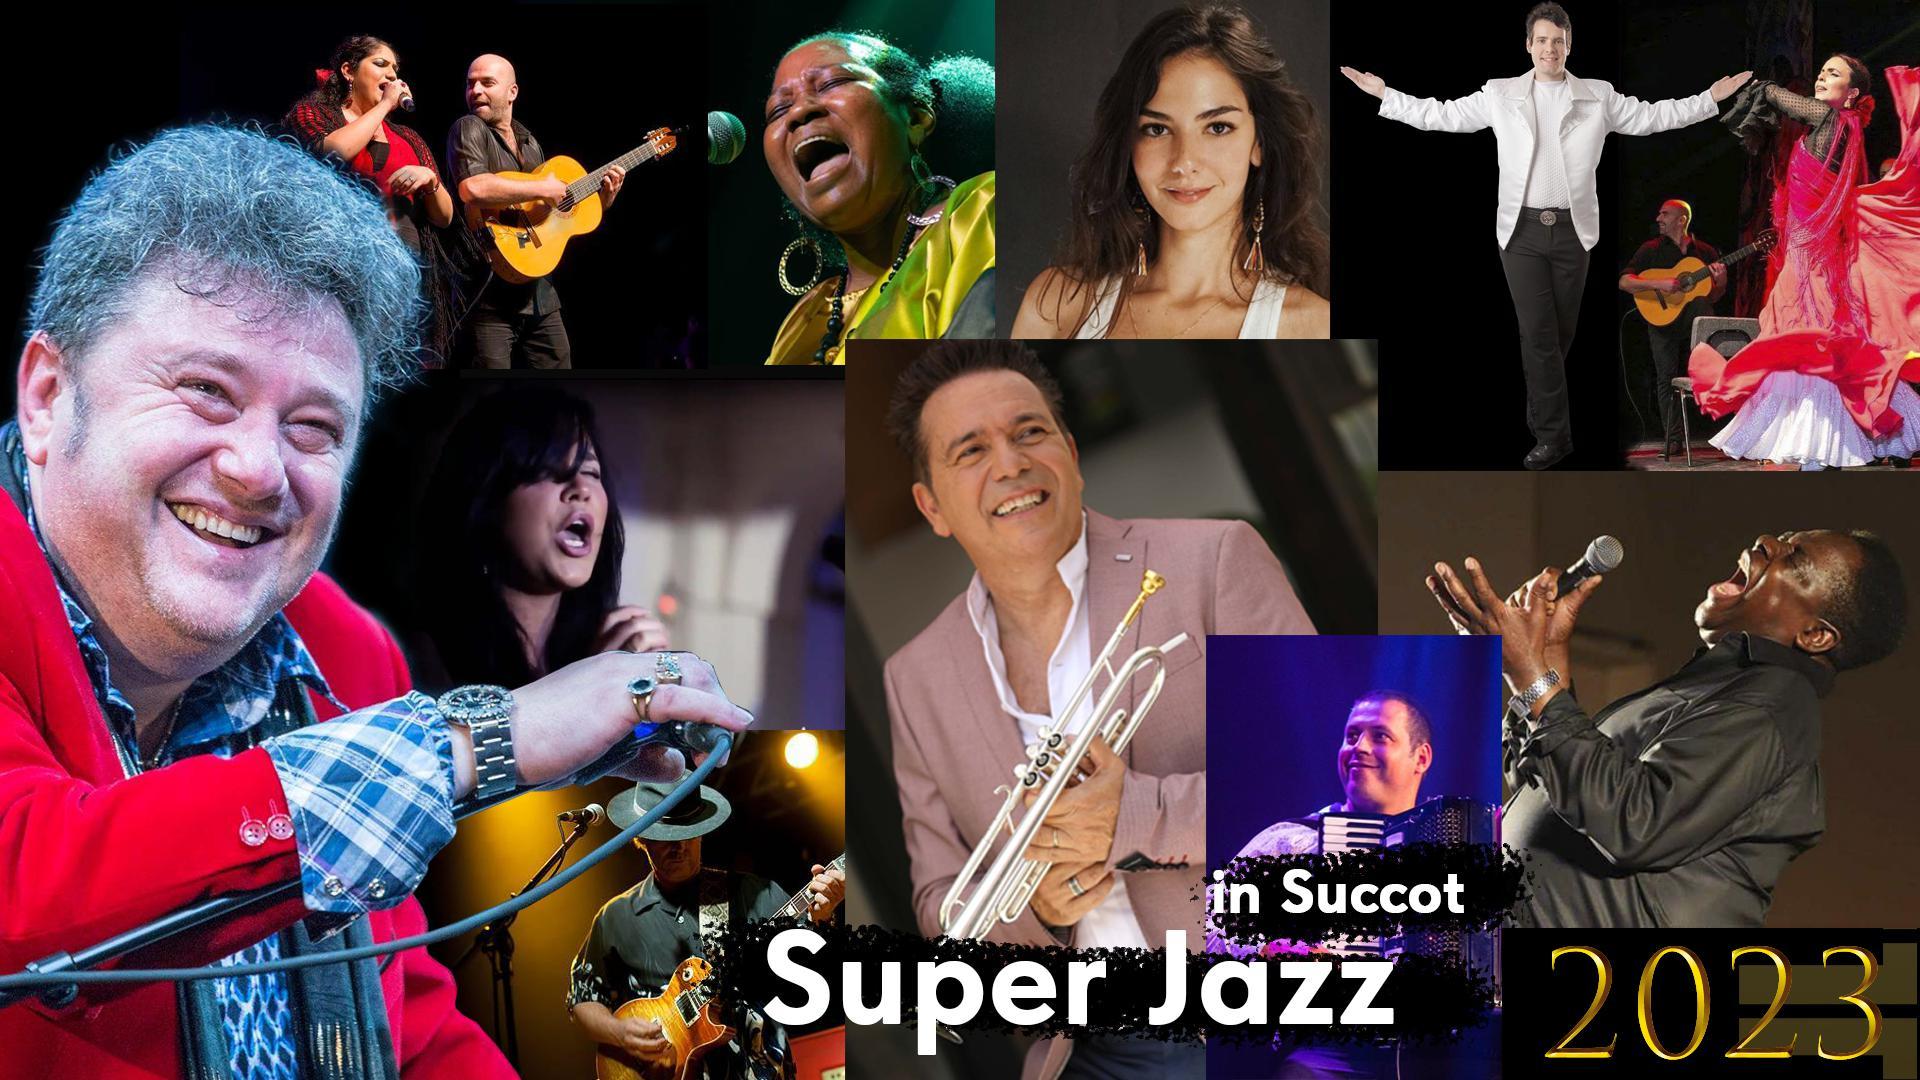 Фестиваль Super Jazz 2023 в дни праздника Суккот – это еще и ирландская музыка!